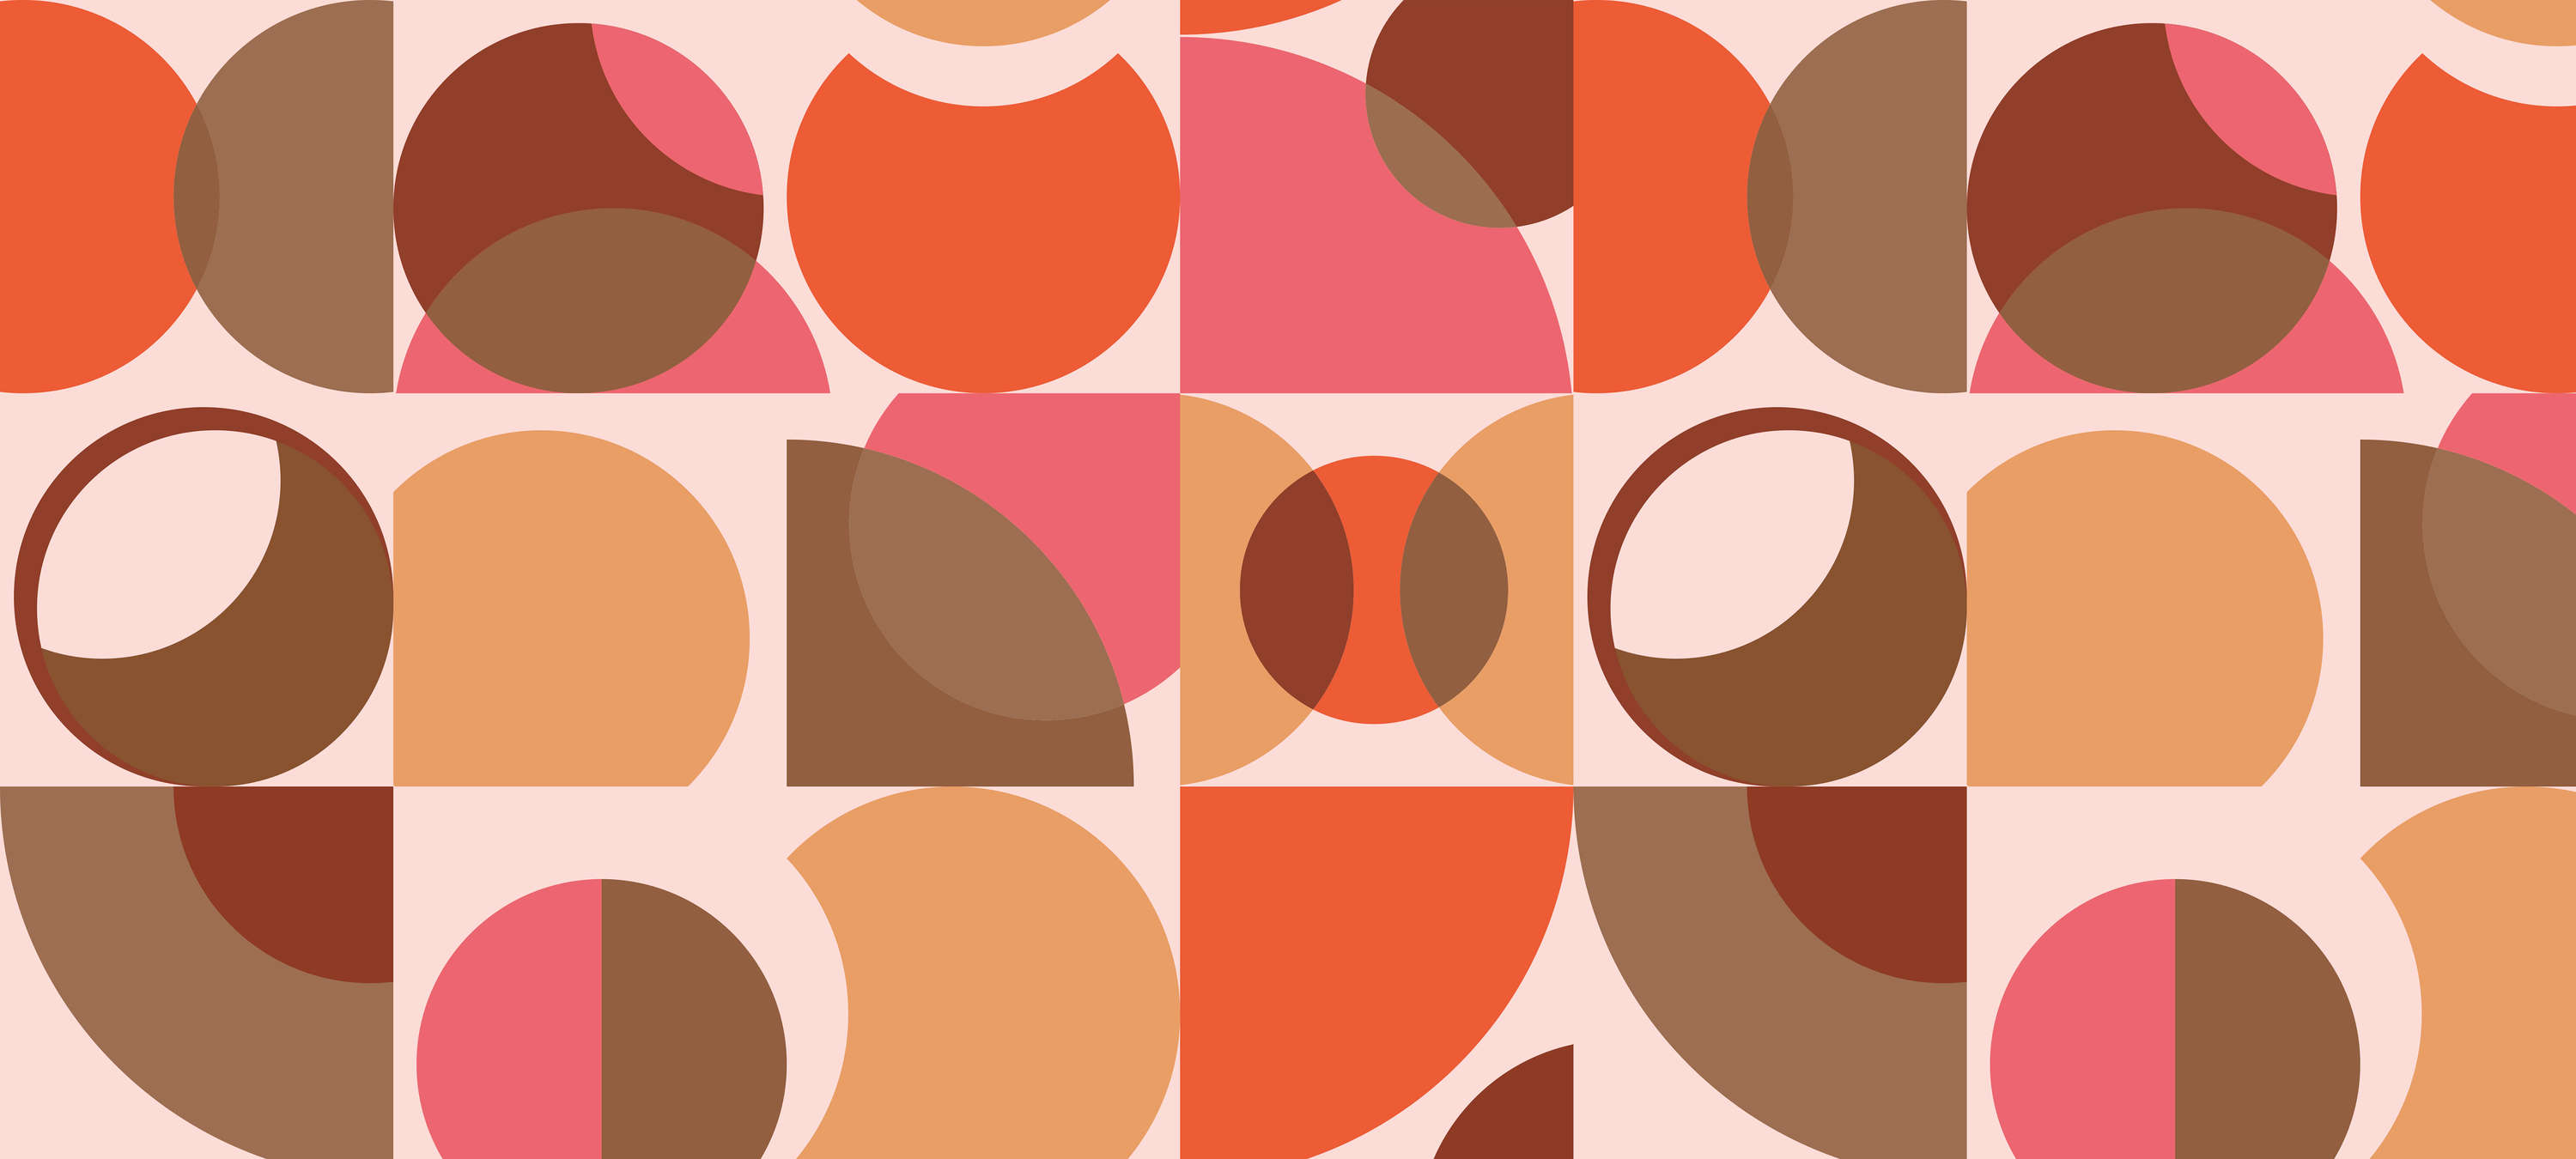             Retro Behang Oranje met Geometrisch Ontwerp - Bruin, Roze, Oranje
        